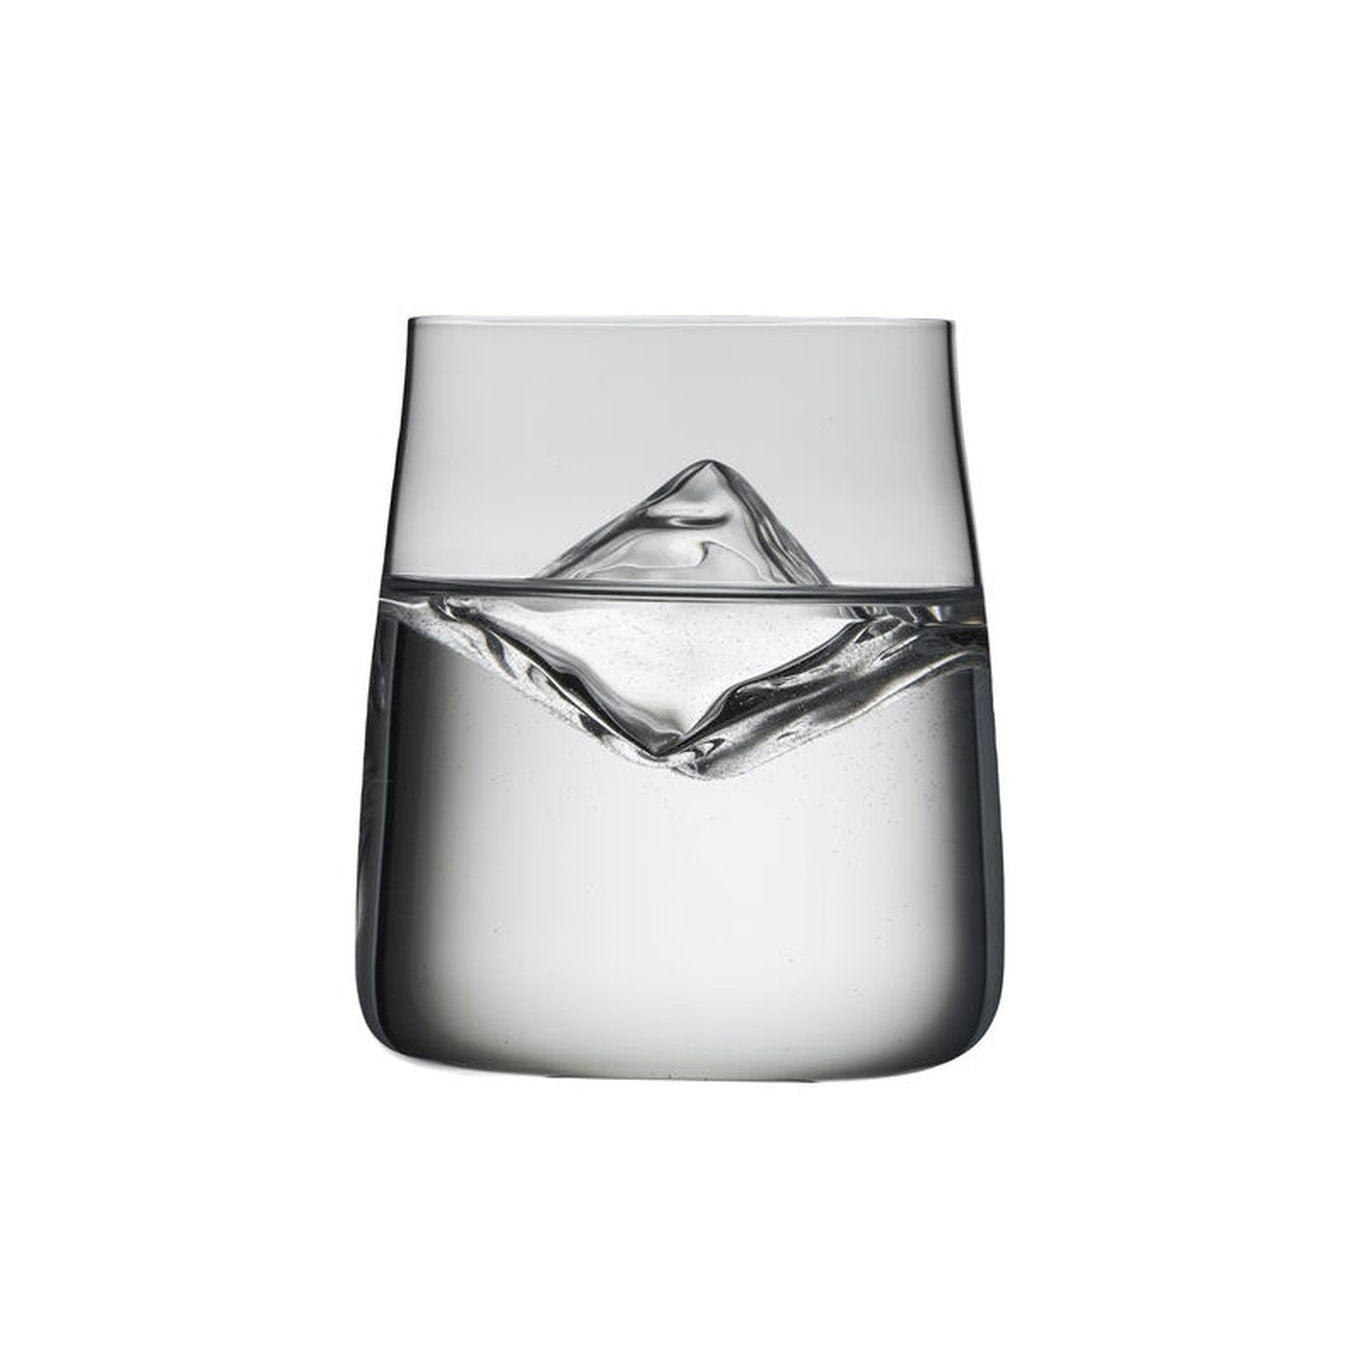 Lyngby Glas Zero Krystal Water Glass 42 Cl, 6 st.